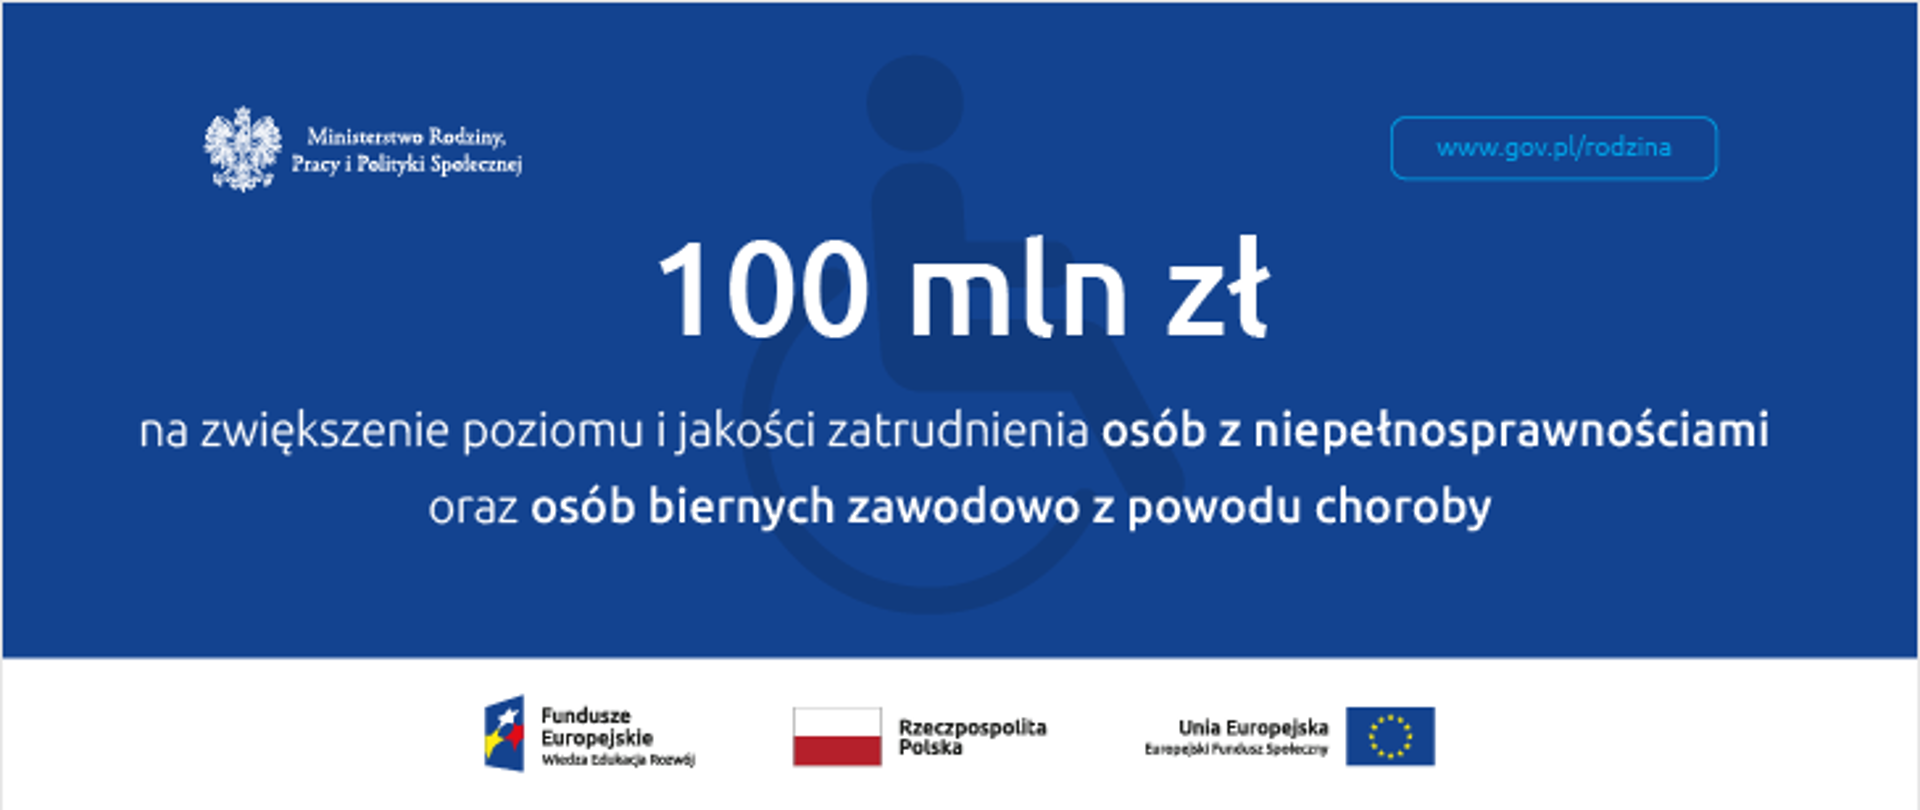 100 mln zł na zwiększenie poziomu i jakości zatrudnienia osób z niepełnosprawnościami oraz osób biernych zawodowo z powodu choroby